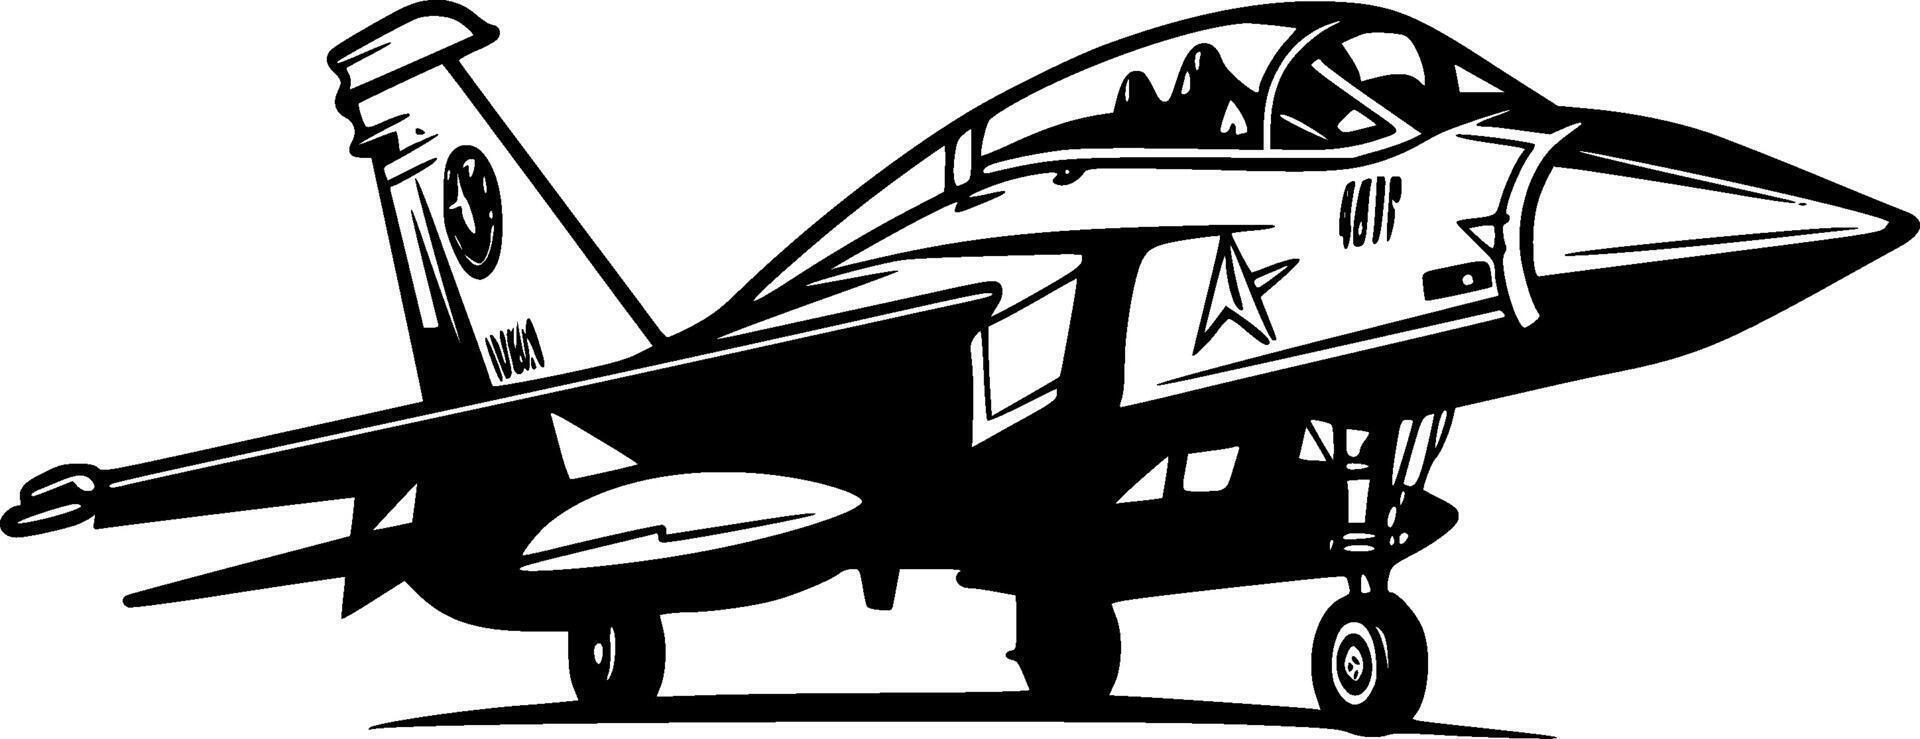 Kämpfer Jet - - minimalistisch und eben Logo - - Vektor Illustration